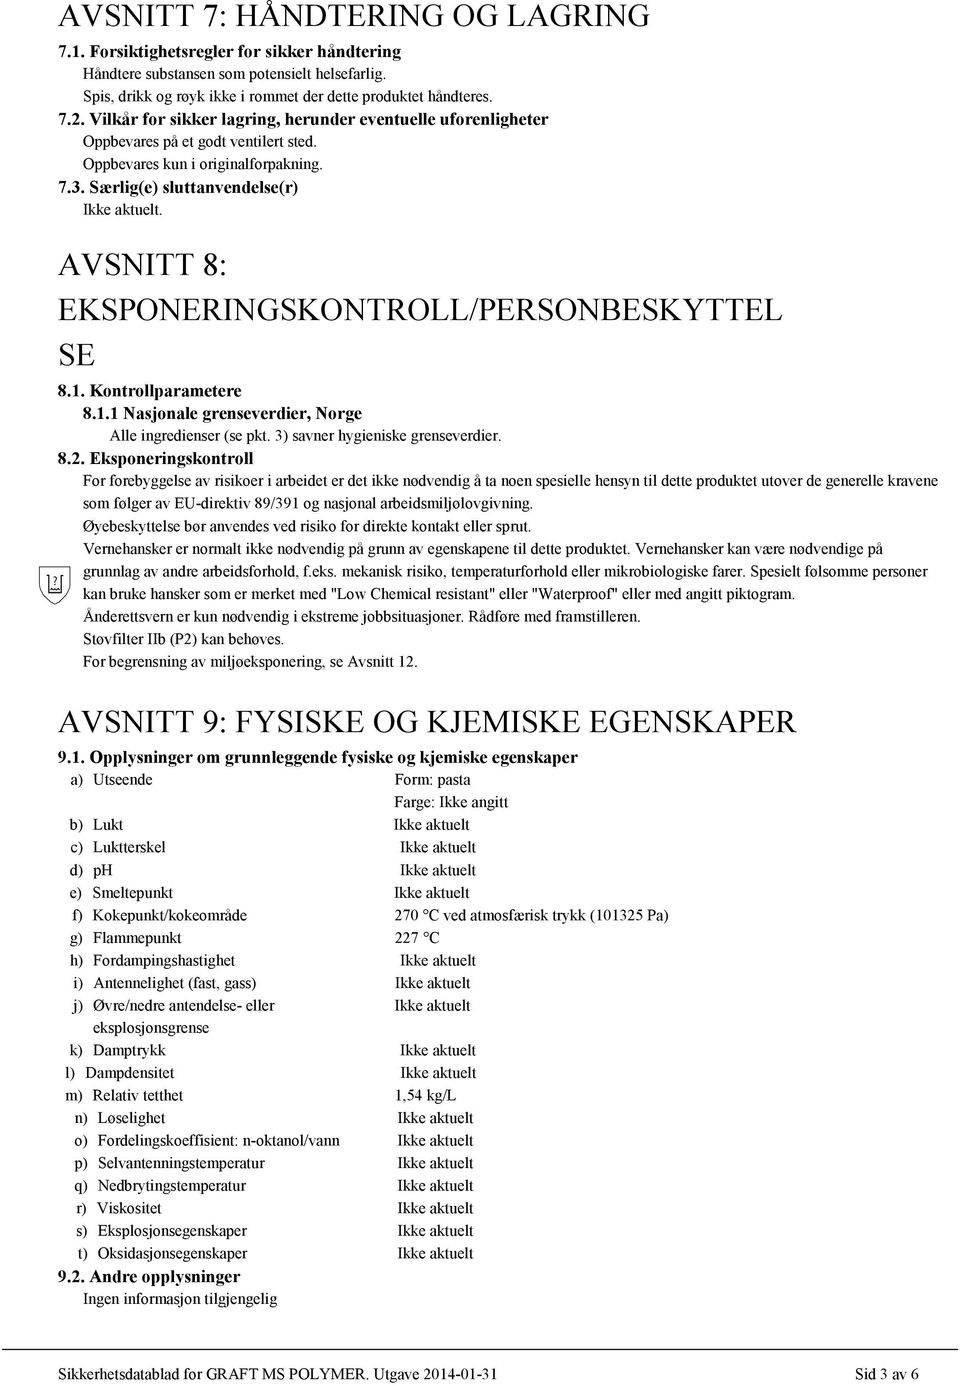 AVSNITT 8: EKSPONERINGSKONTROLL/PERSONBESKYTTEL SE 8.1. Kontrollparametere 8.1.1 Nasjonale grenseverdier, Norge Alle ingredienser (se pkt. 3) savner hygieniske grenseverdier. 8.2.